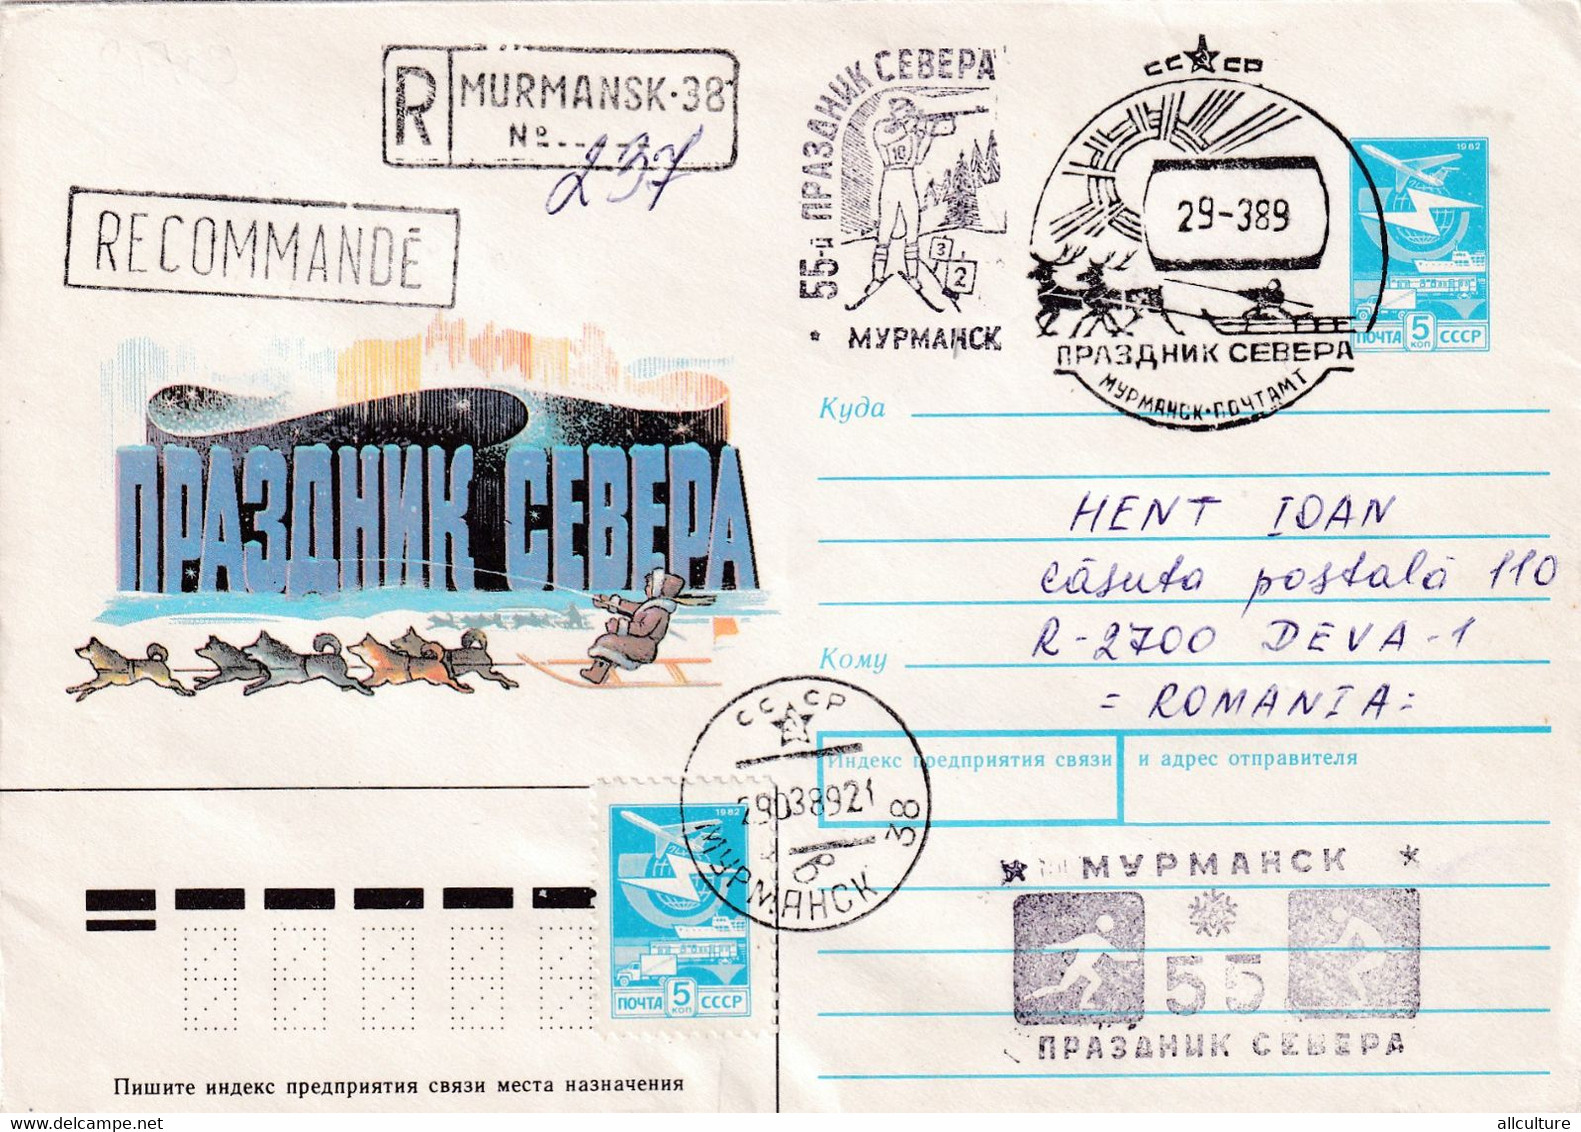 A8152- REGISTRED LETTER MURMANSK, HOLIDAY OF THE NORTH, 1989 USSR POSTAL STATIONERY SENT TO DEVA ROMANIA - Eventi E Commemorazioni